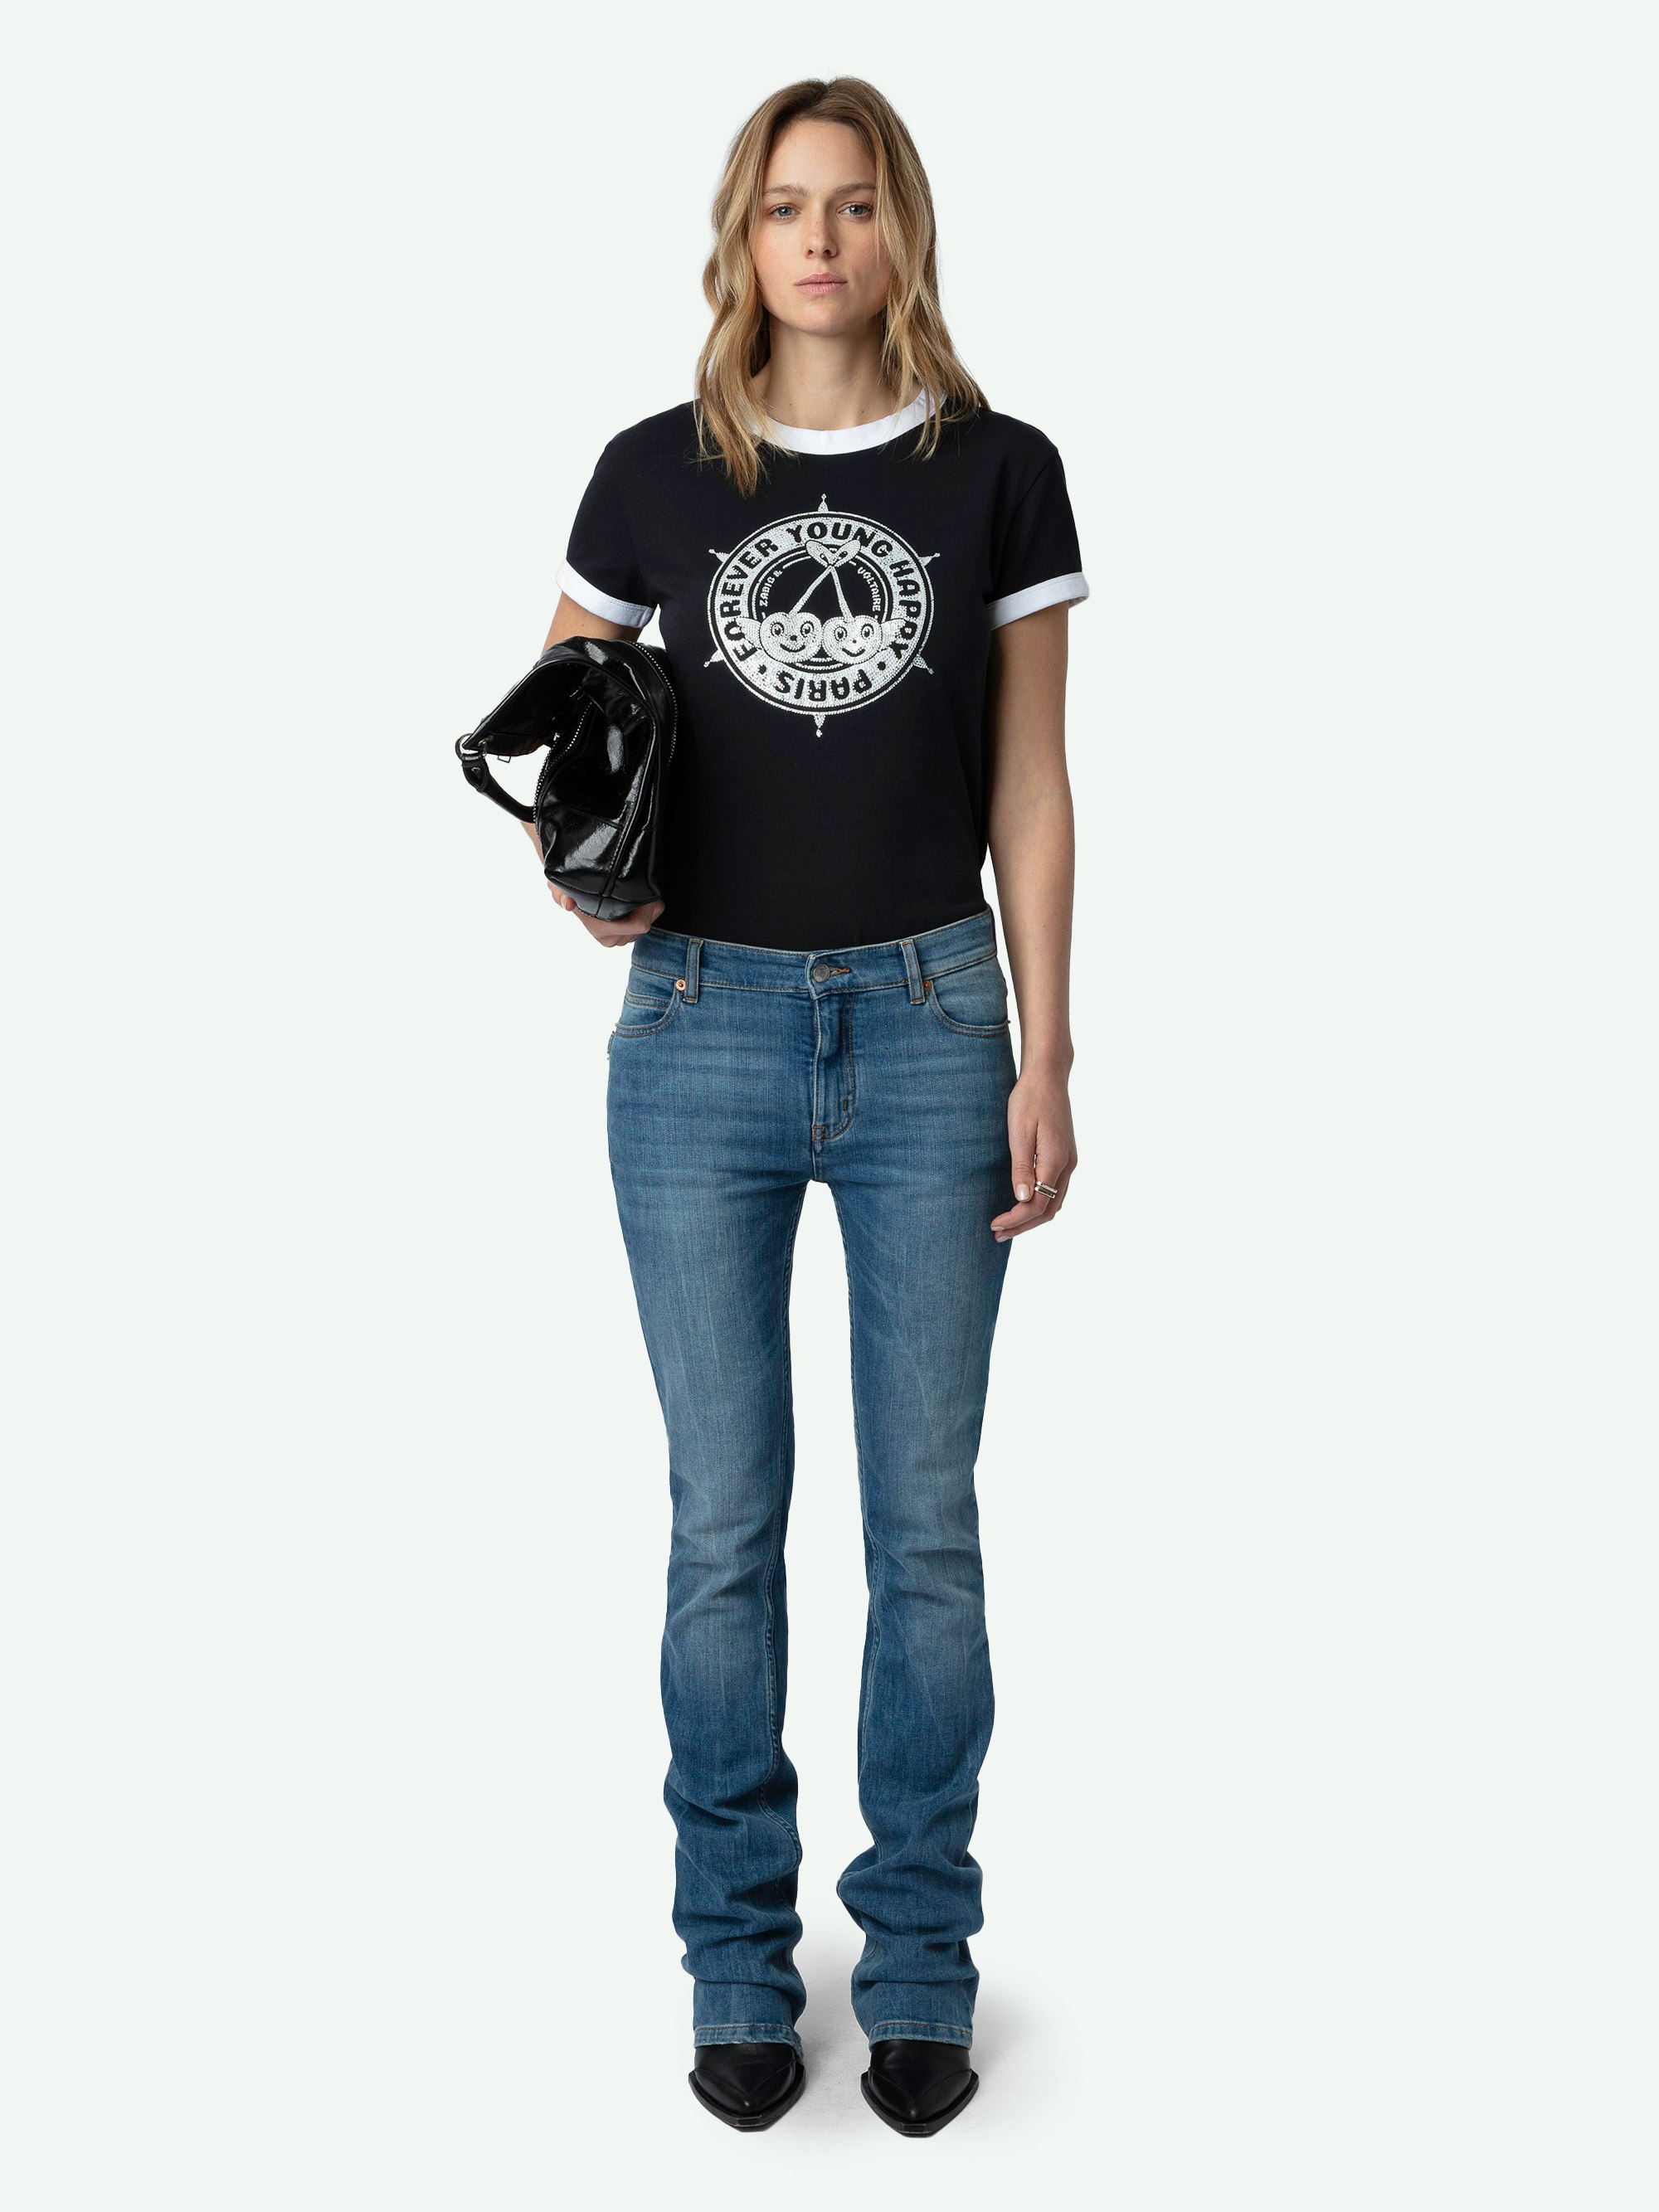 Camiseta Walk con Strass y Escudo - Camiseta de algodón ecológico de color negro, de manga corta, con estampado de escudos y cerezas con strass en la parte delantera.